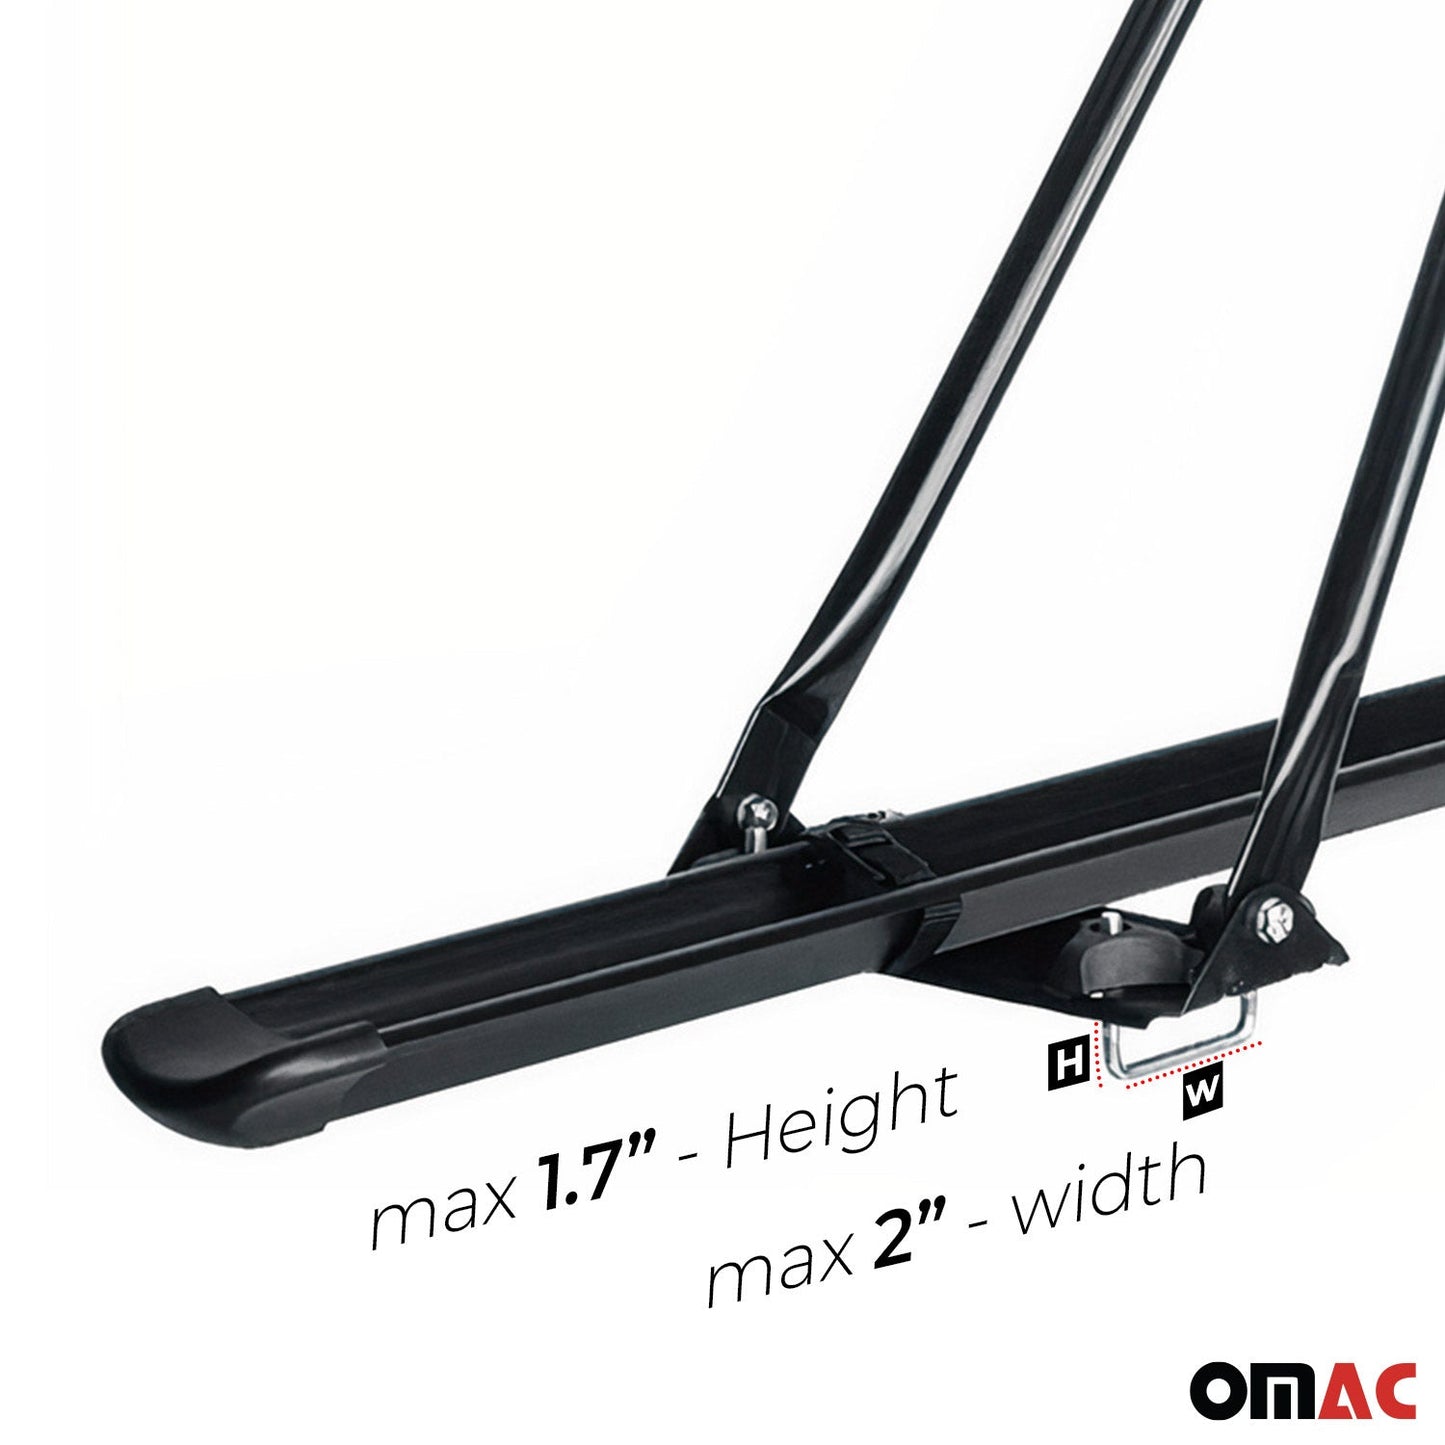 OMAC Bike Rack Carrier Roof Racks Set for Mercedes GLK Class X204 2009-2015 Black Alu U020670